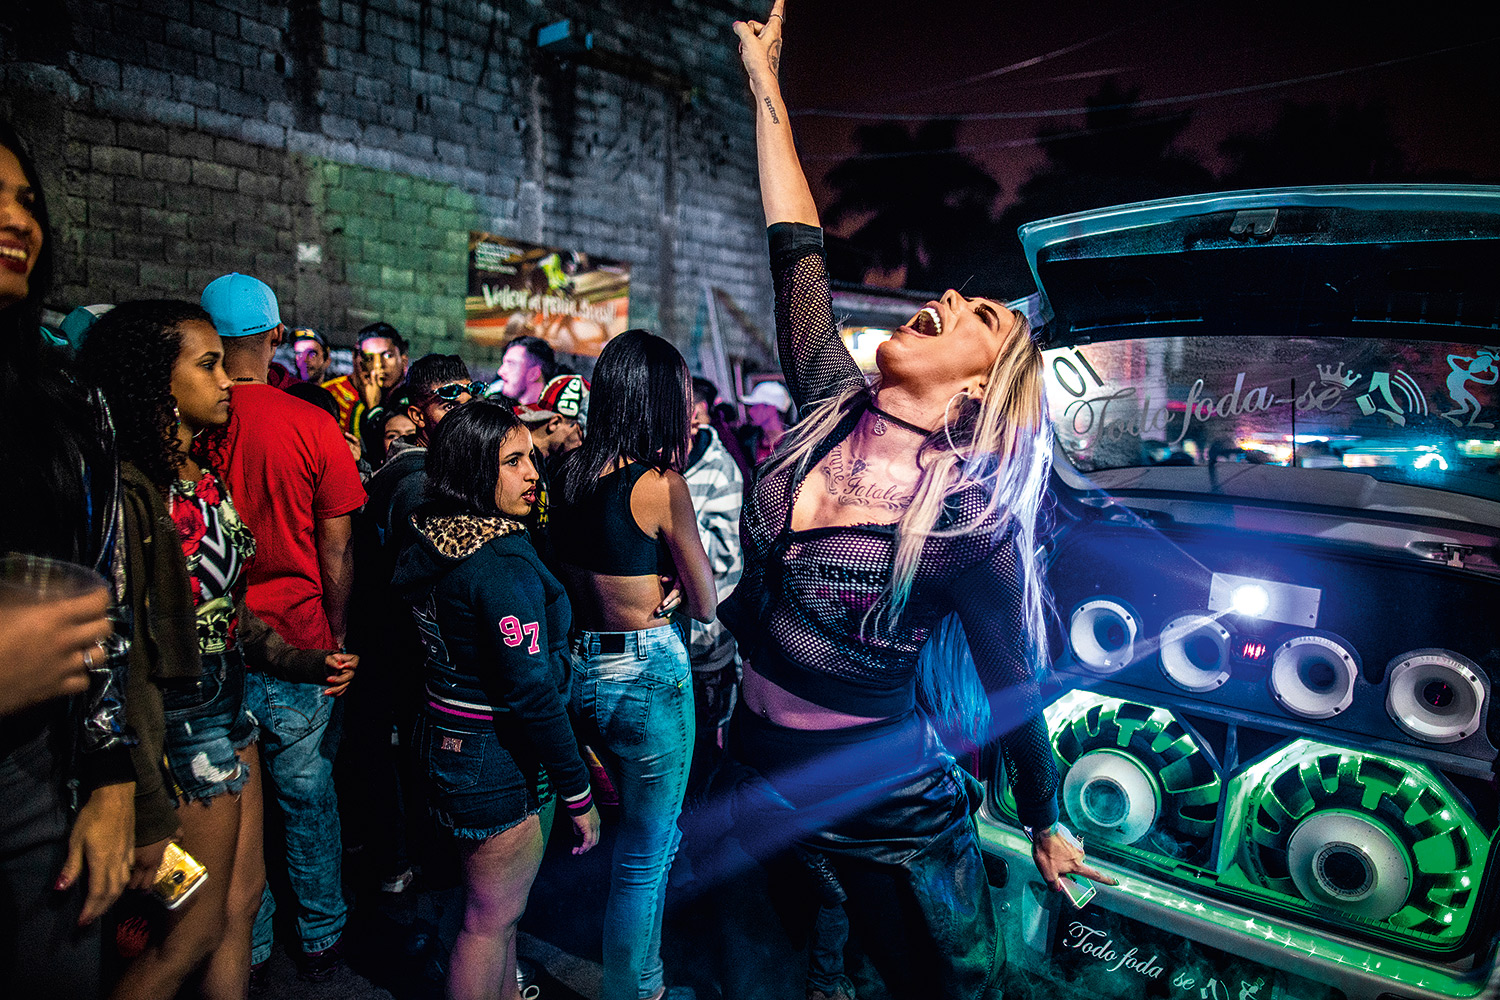 TOLERÂNCIA - Vitória Monforte, no Baile da DZ7, em Paraisópolis: “Ninguém me olha torto por eu ser transexual”